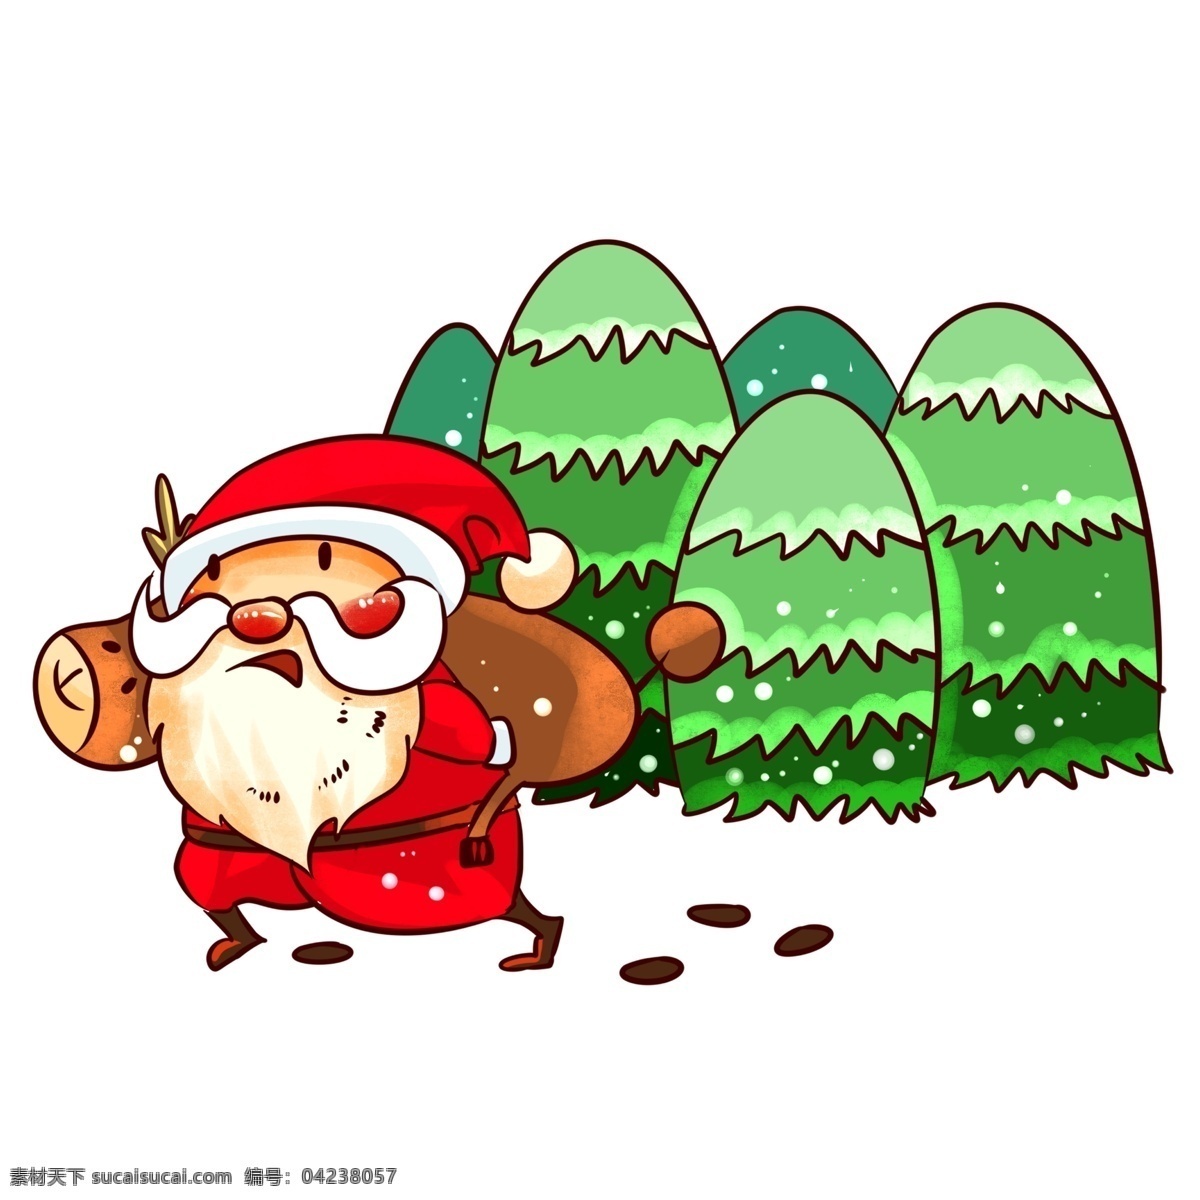 圣诞节 圣诞老人 背着 麋鹿 手绘 插画 手绘送礼物 礼物 圣诞节雪人 雪人 收礼 物 小朋友